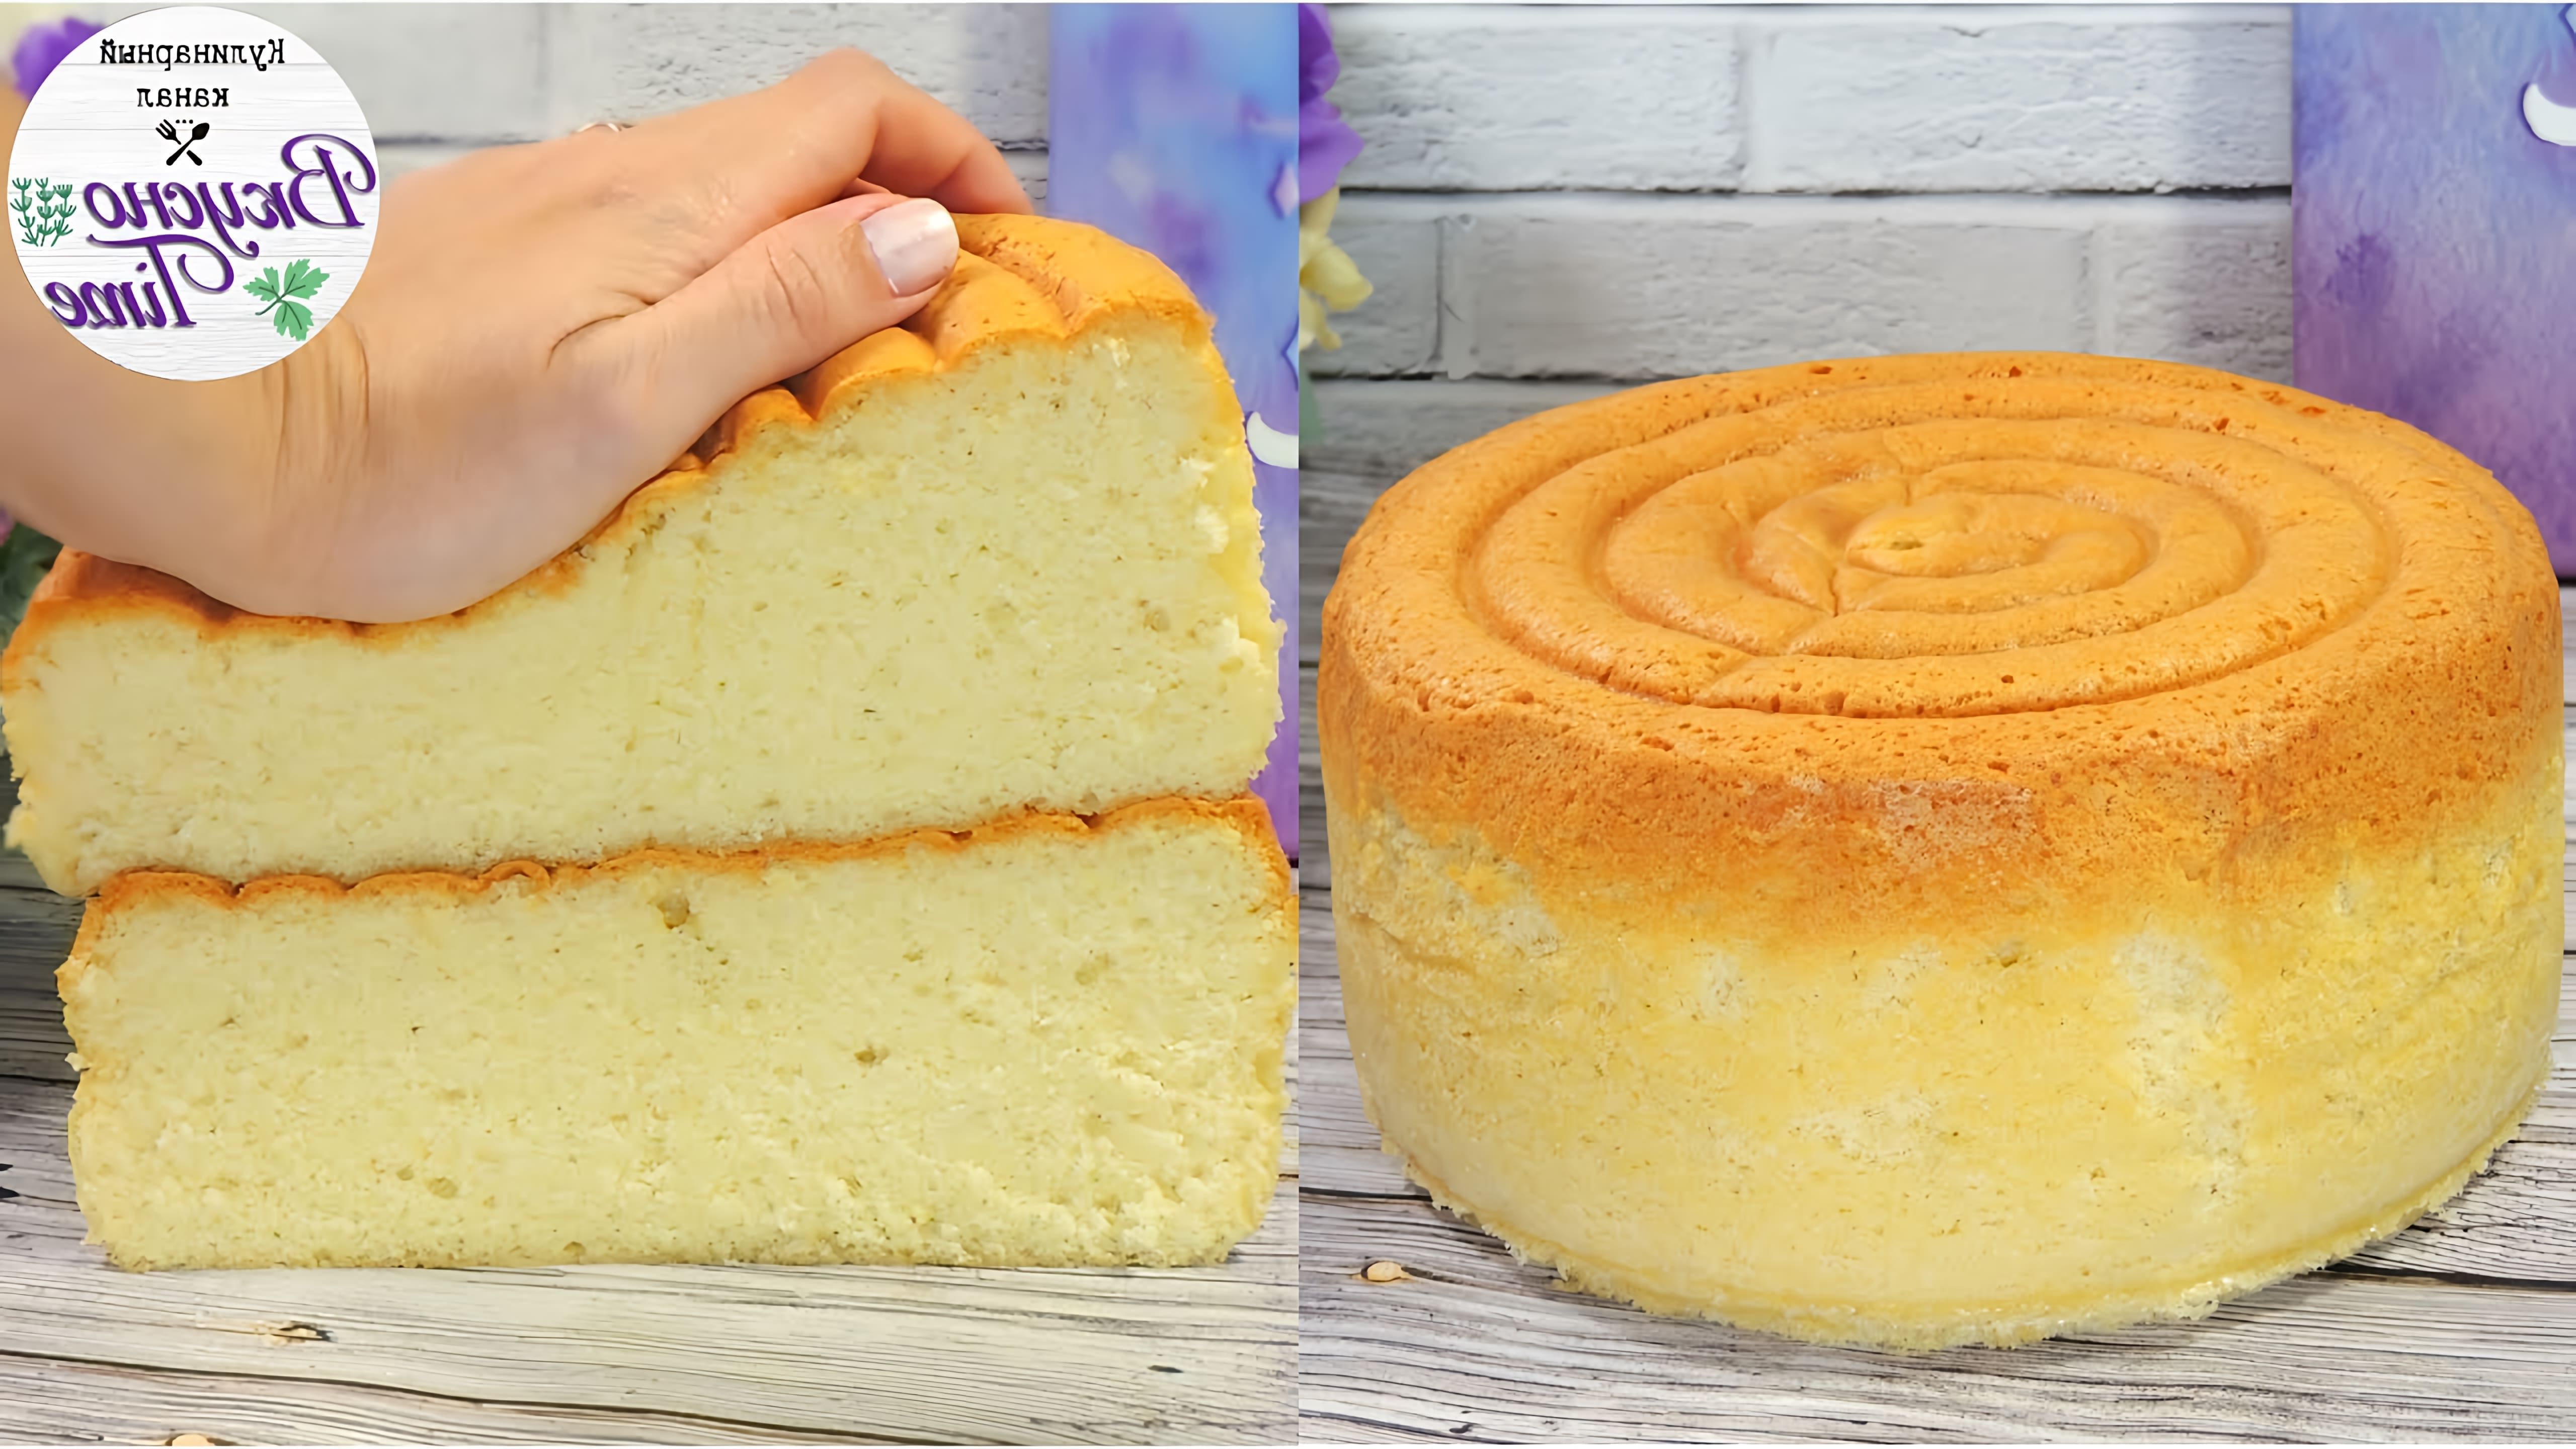 В этом видео демонстрируется рецепт японского хлопкового бисквита Sponge cake, который готовится без разрыхлителя